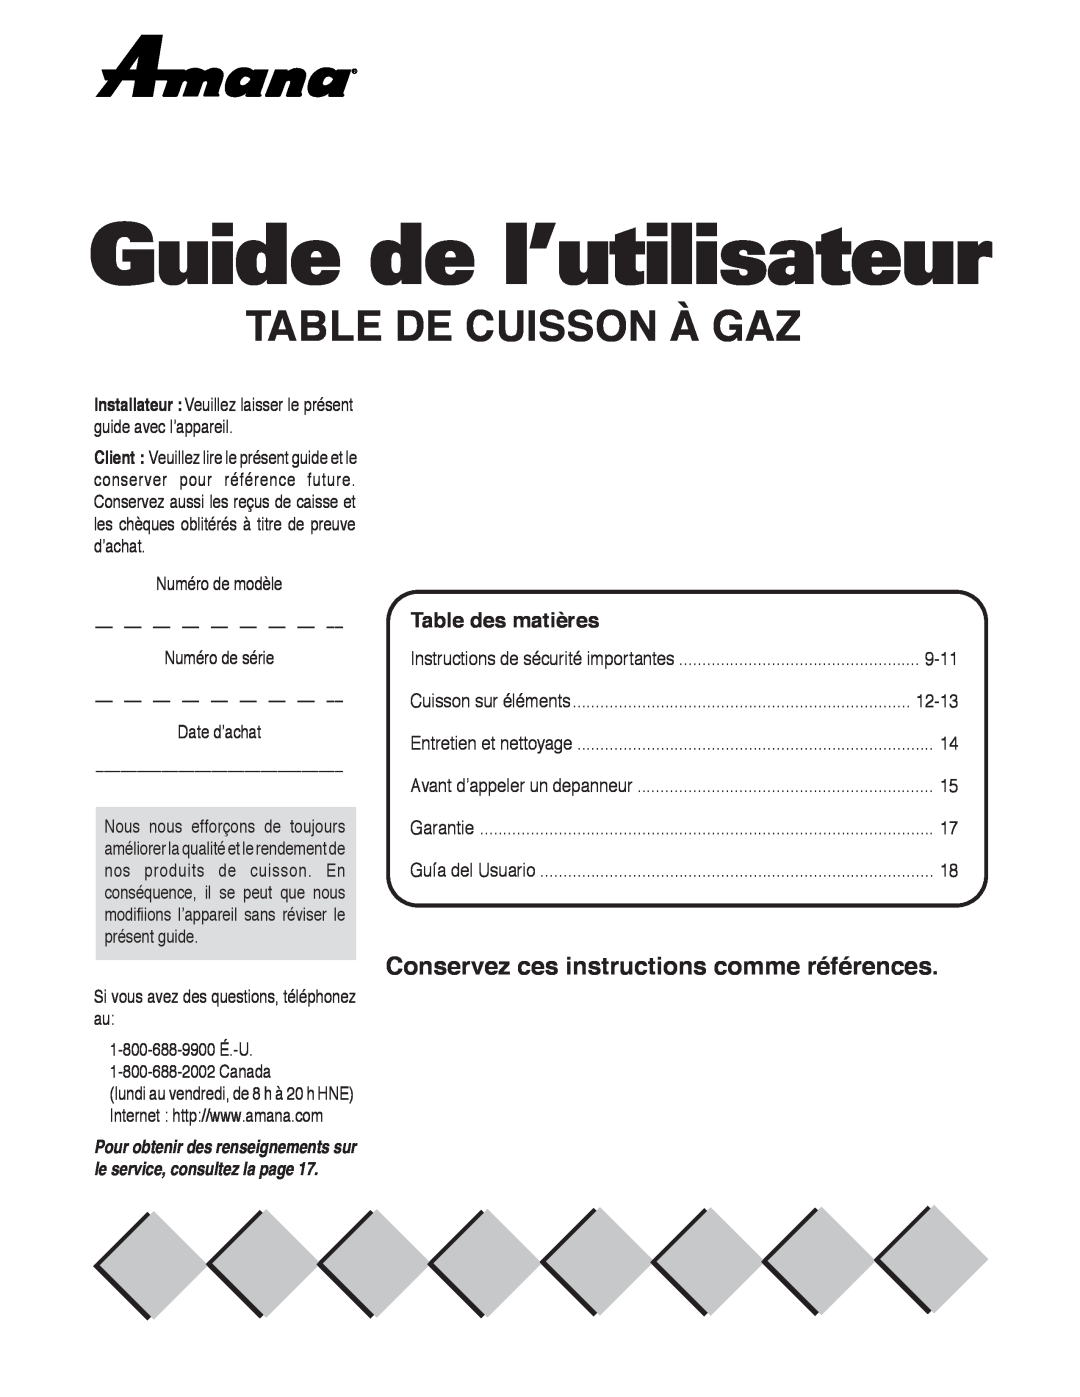 Maytag AKS3040 Guide de l’utilisateur, Table De Cuisson À Gaz, Conservez ces instructions comme références, Date d’achat 